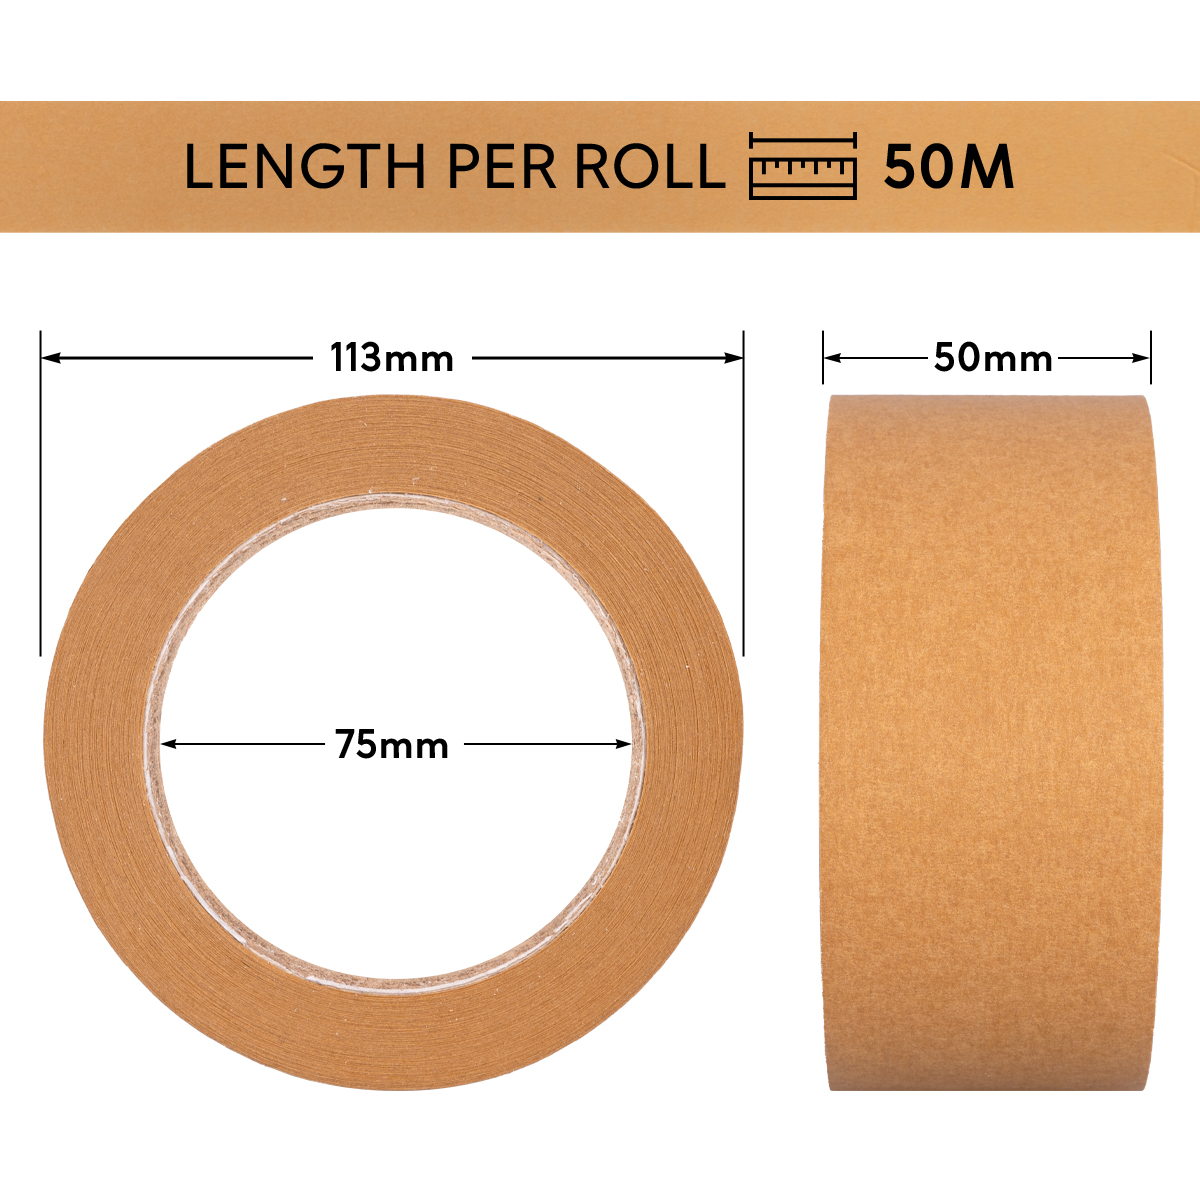 Paper adhesive tape 50m x 50mm, brown